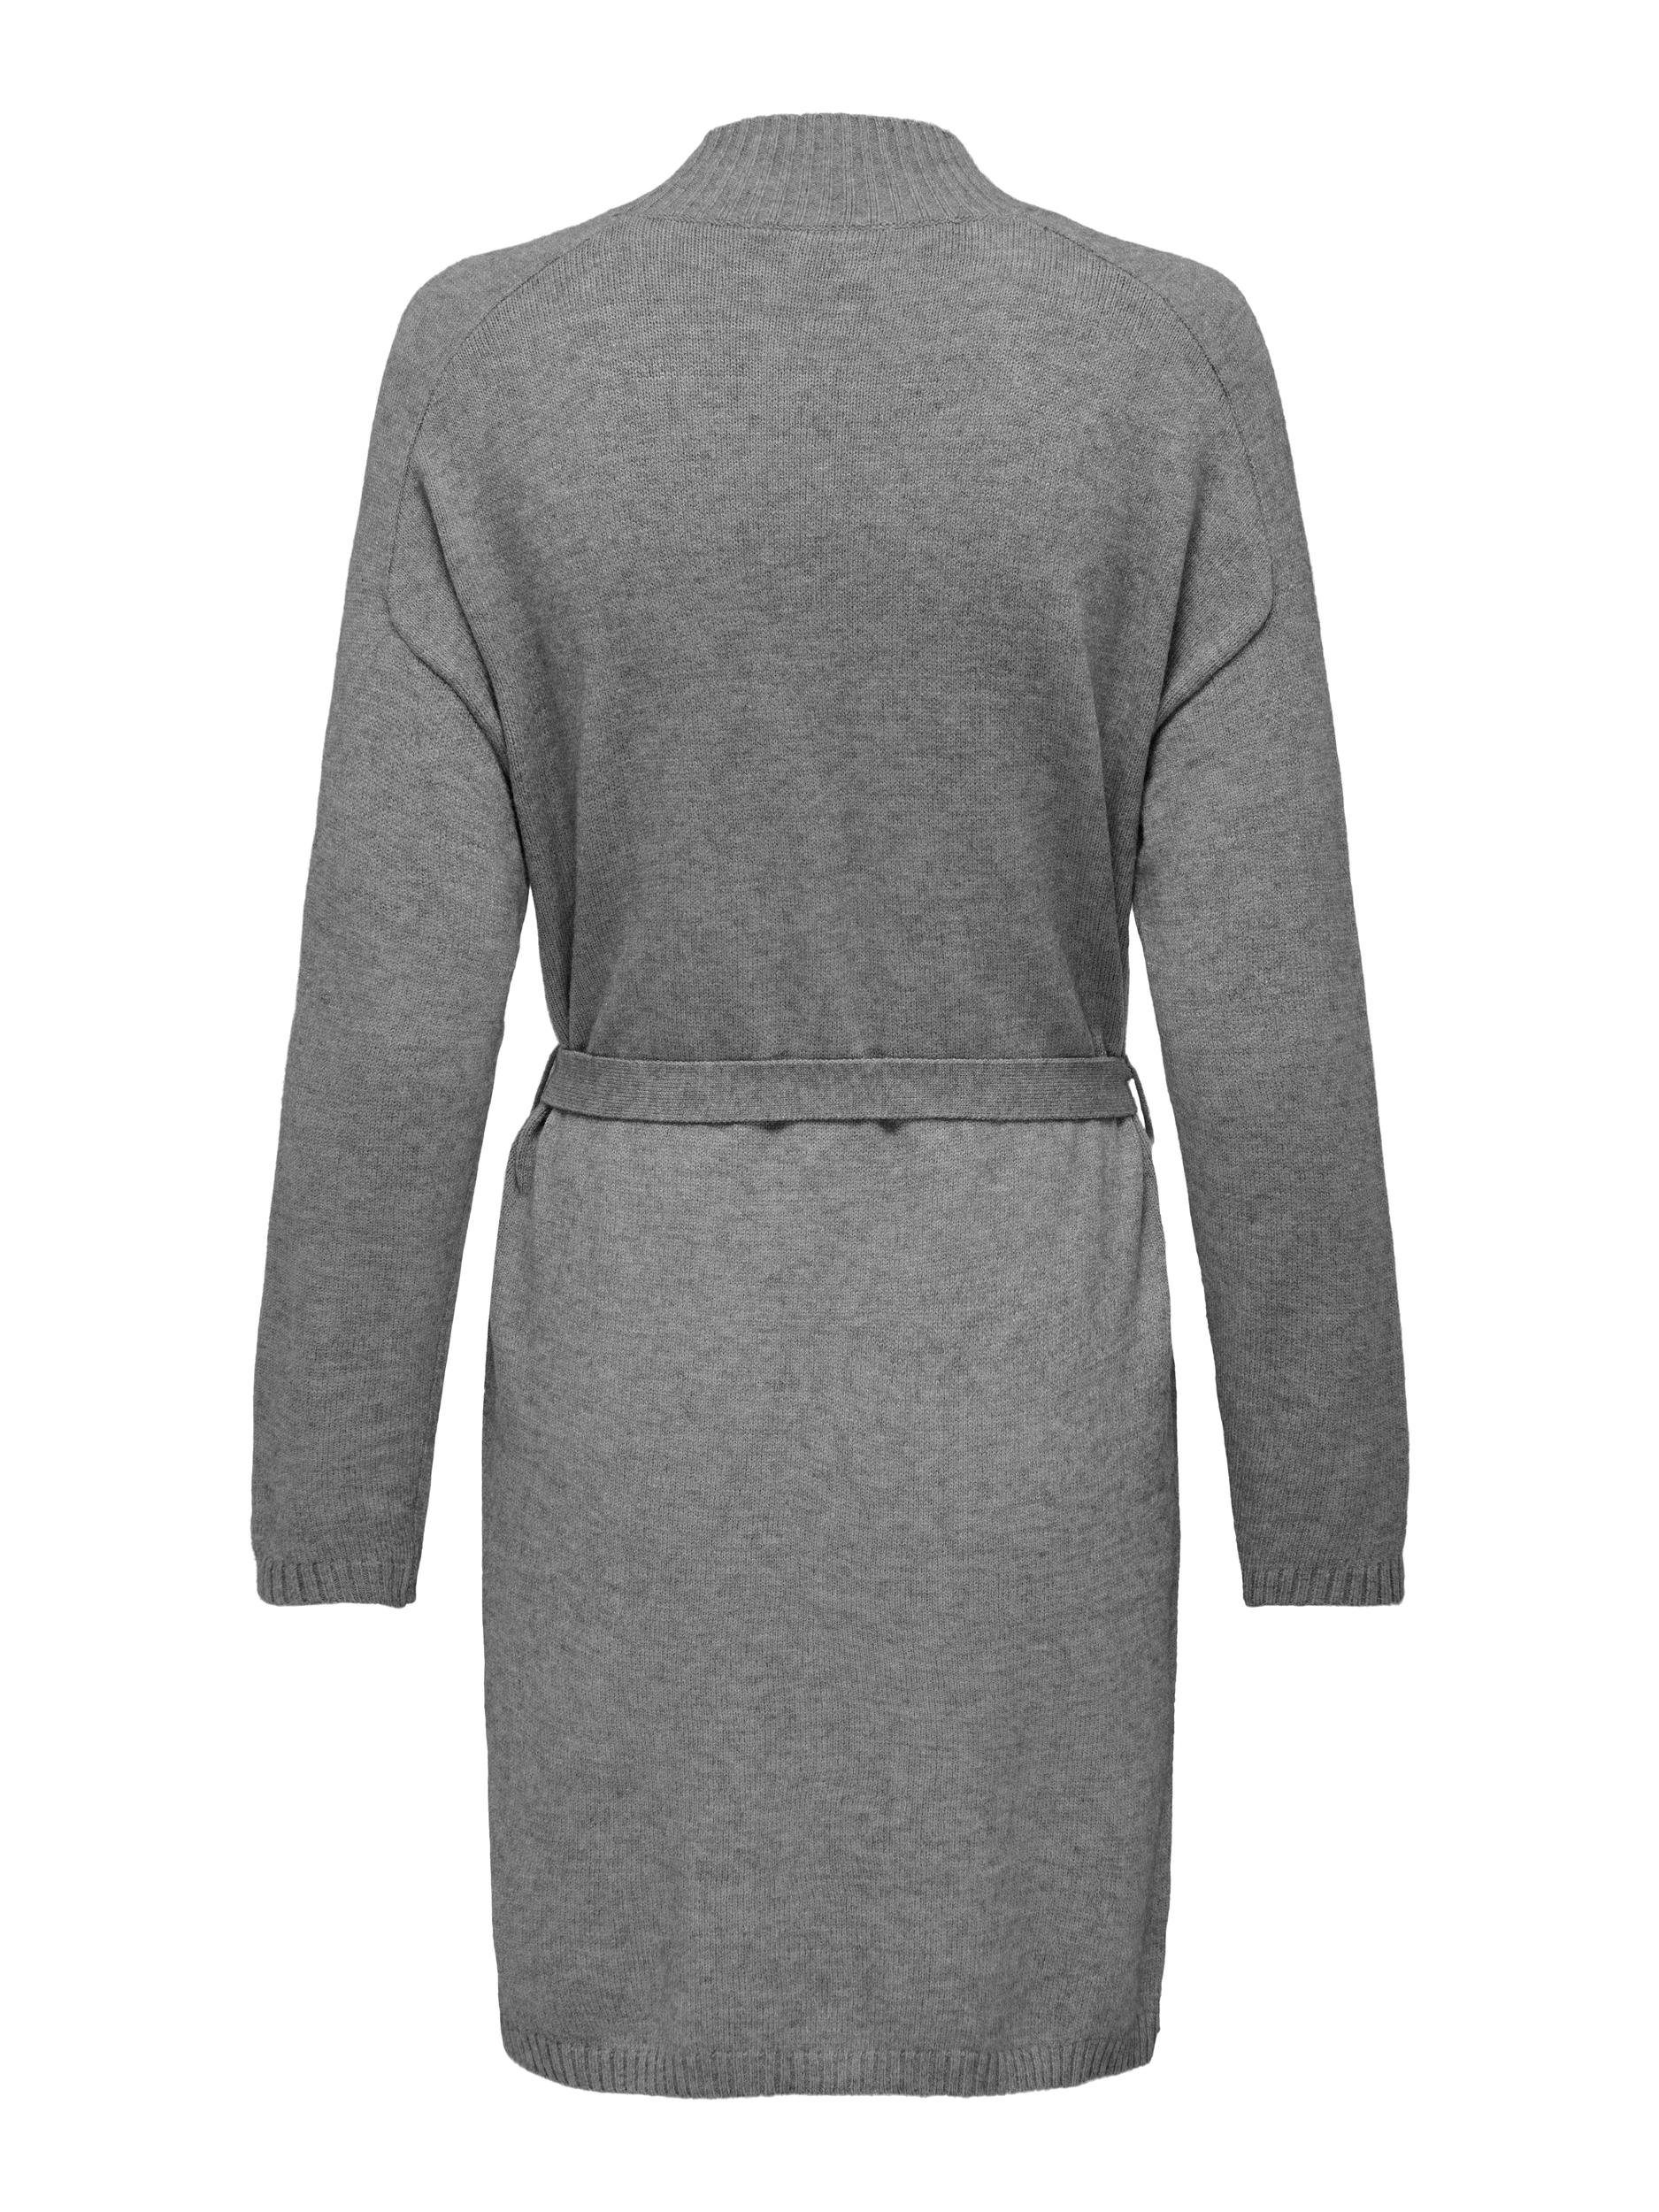 DRESS Melange Strickkleid Medium L/S ONLY EX KNT ONLLEVA Grey BELT